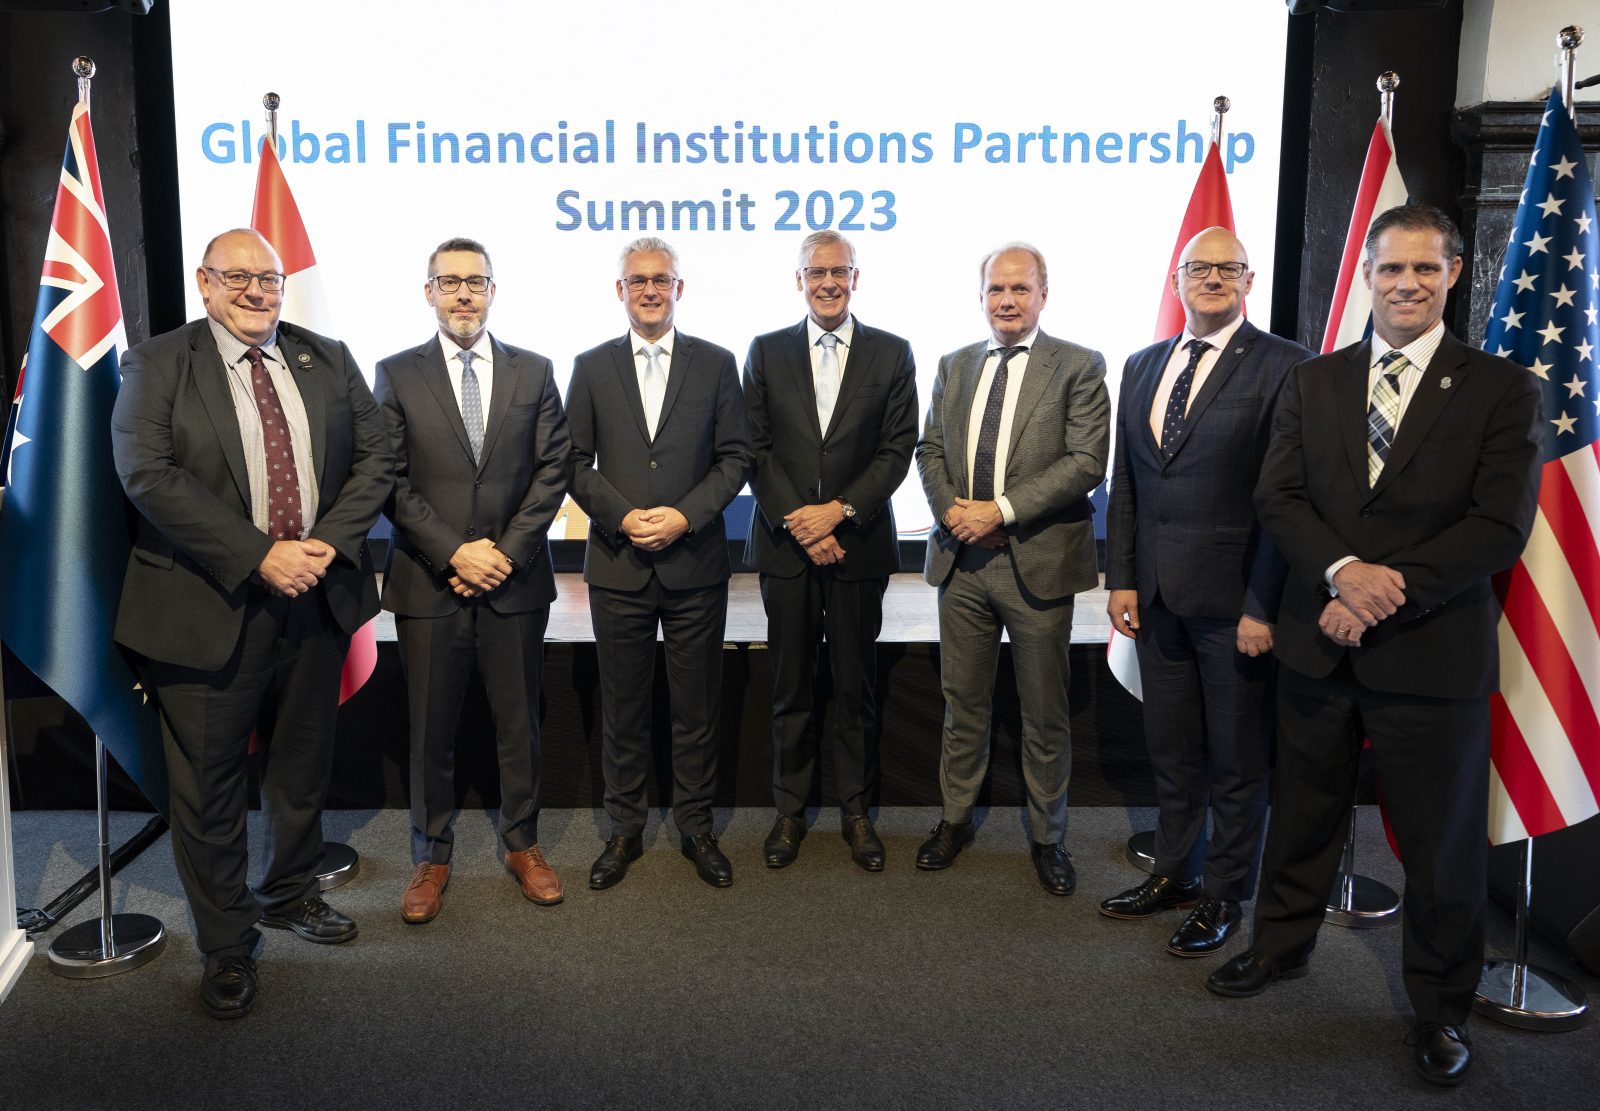 Groepsfoto op een podium met op het scherm de tekst Global Financial Institutions Partnership, daarvoor een groepsfoto van de 5 J5 chiefs, staatssecretaris van Rij en DG Belastingdienst Peter Smink. 